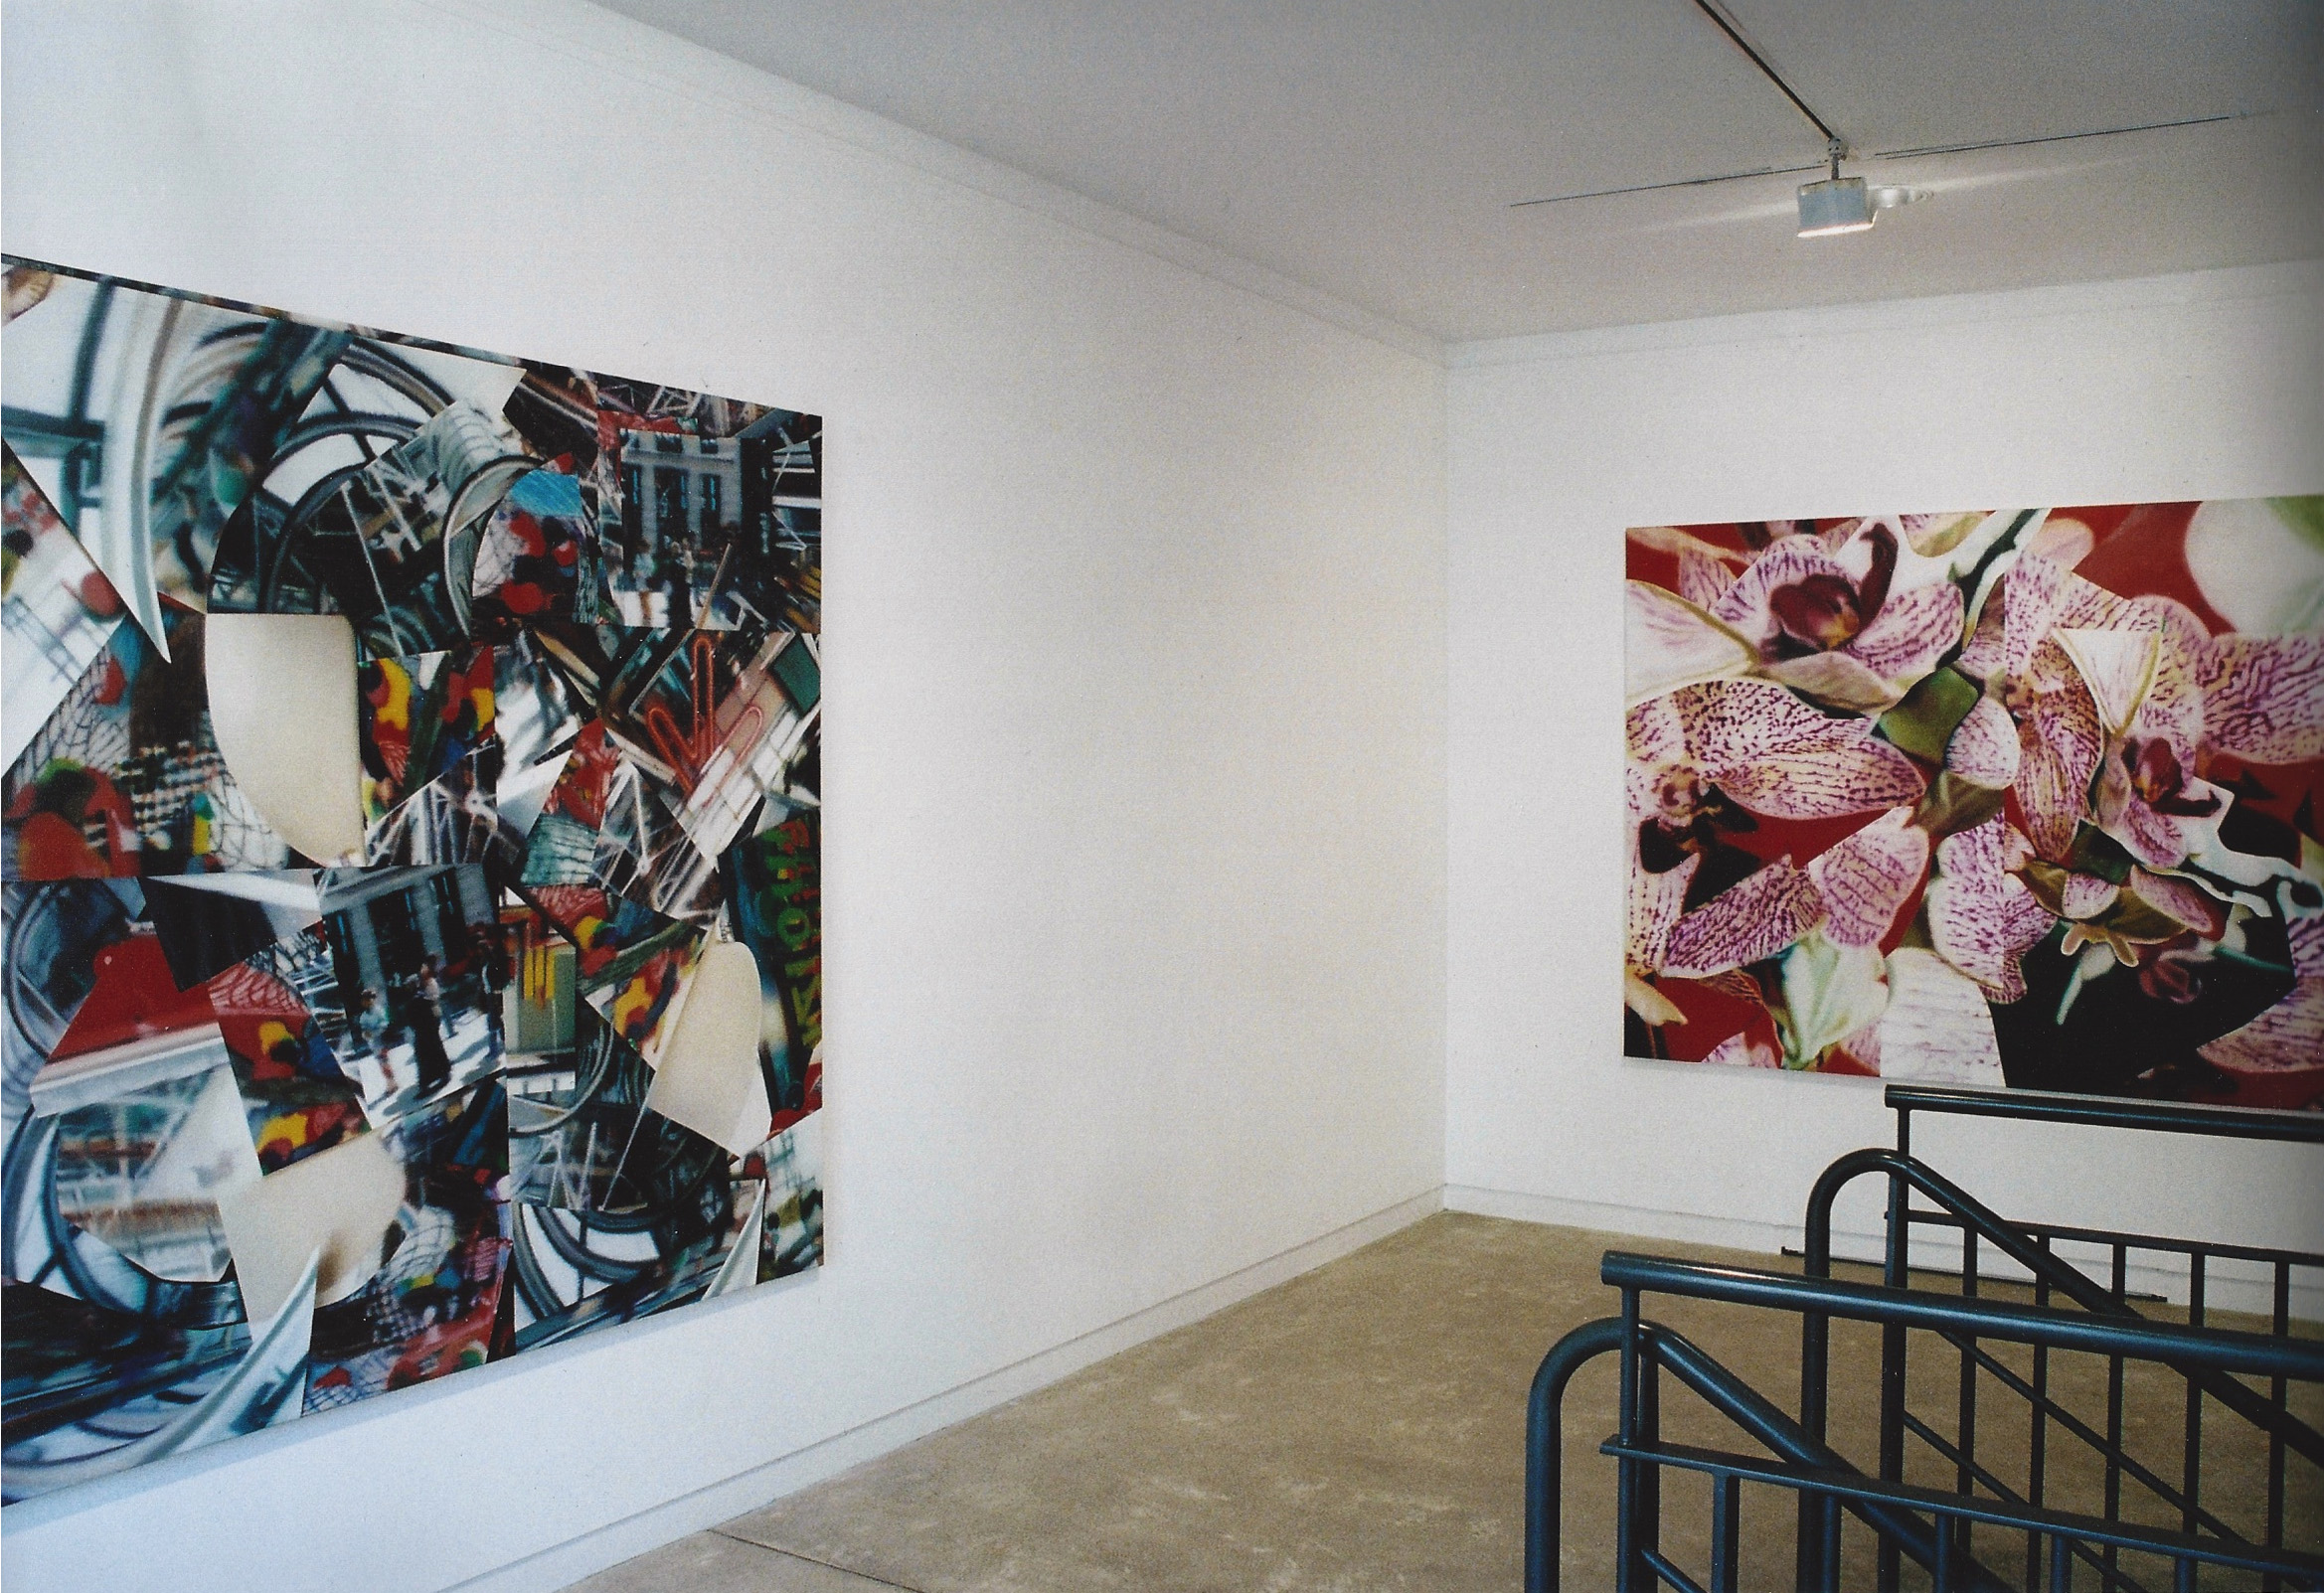   Etats de Peinture , Maison des Arts de Malakoff (FR)&nbsp;2003. Curator Philippe Piguet. 